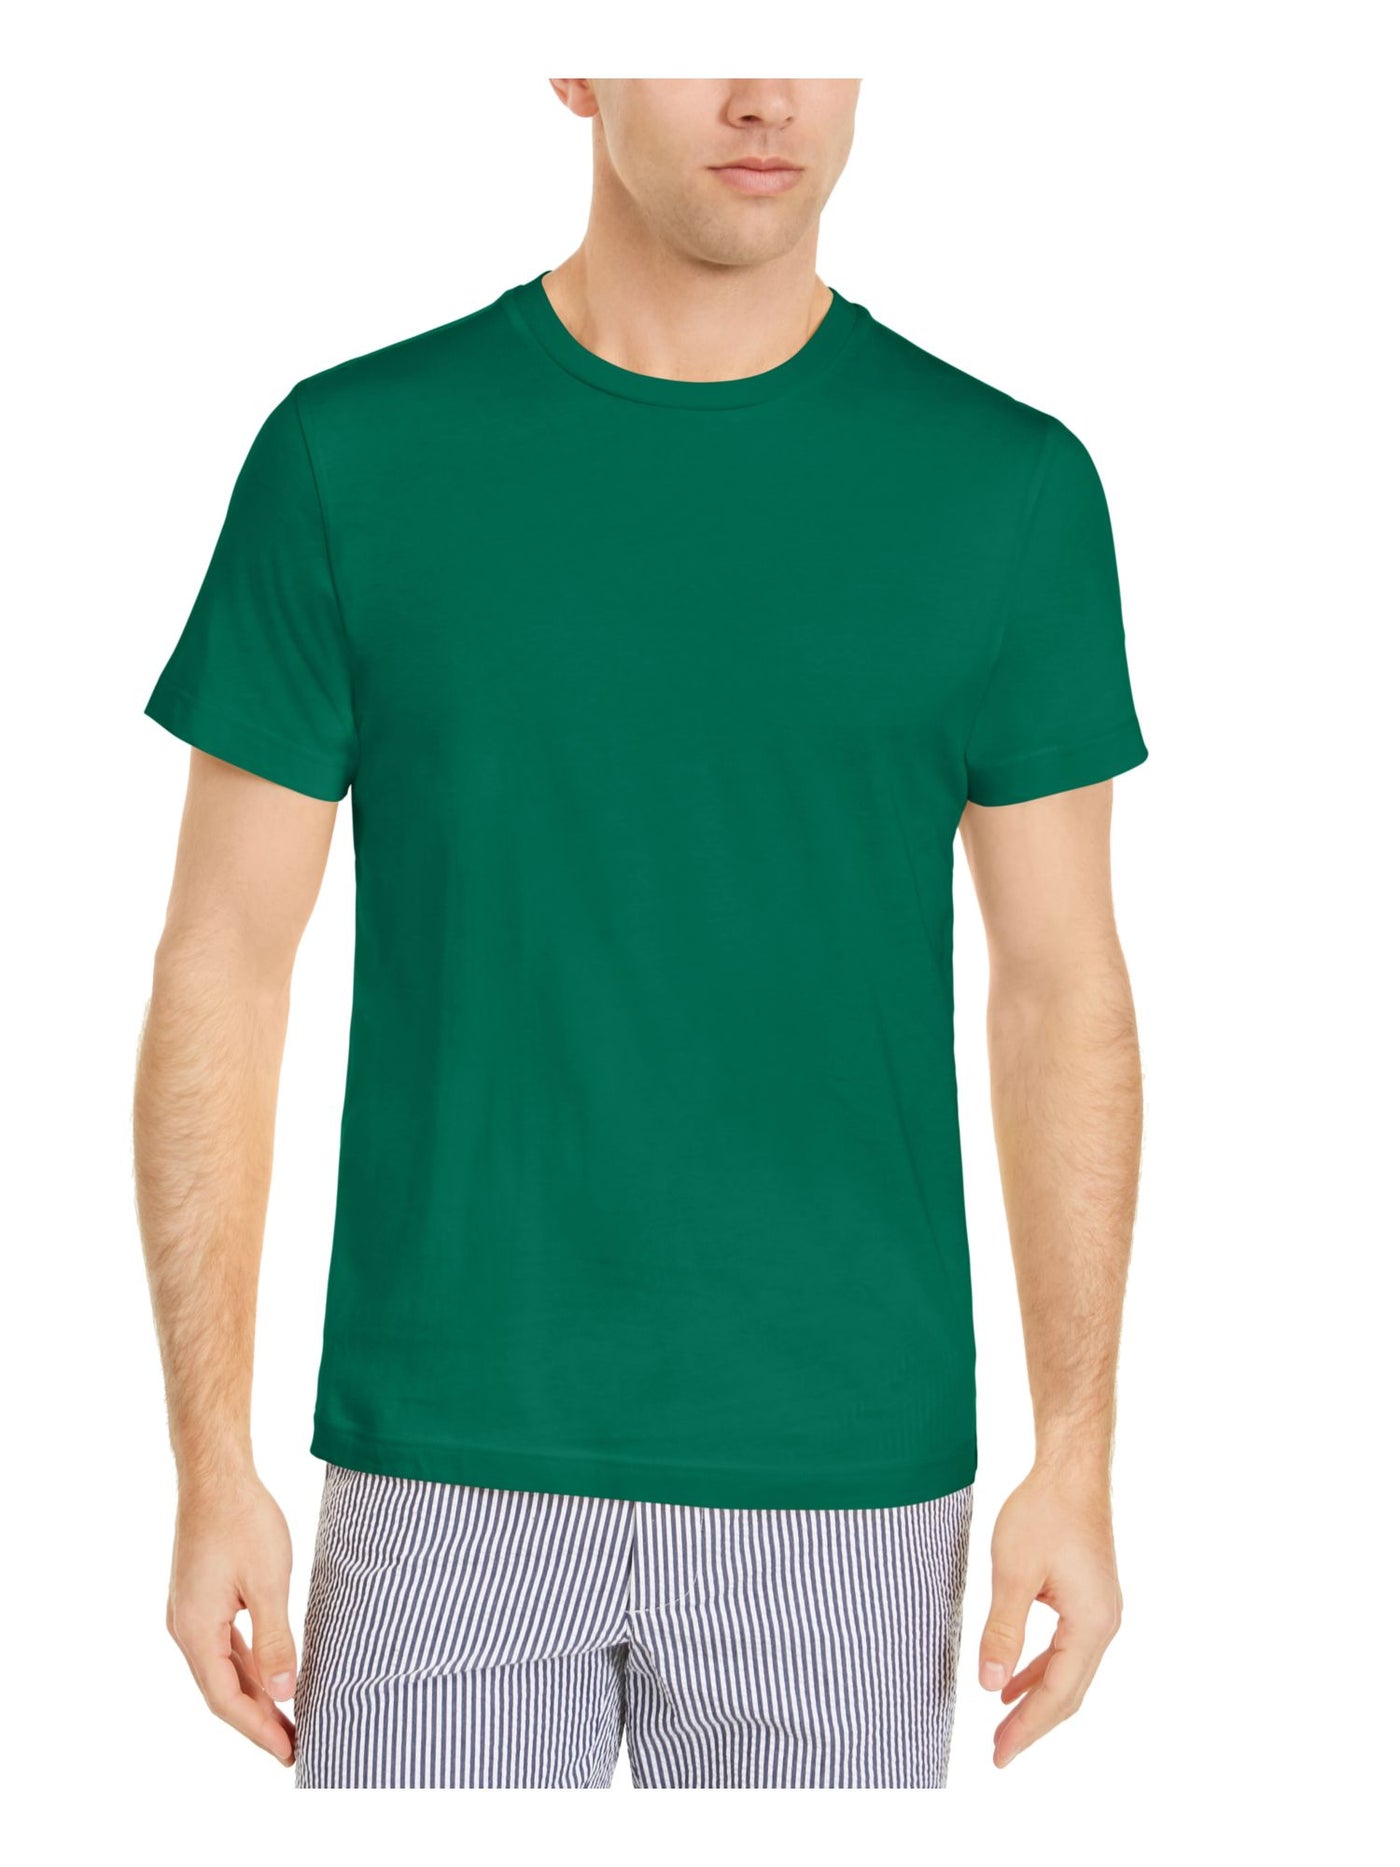 CLUBROOM Mens Green Lightweight, Classic Fit Moisture Wicking T-Shirt XXL